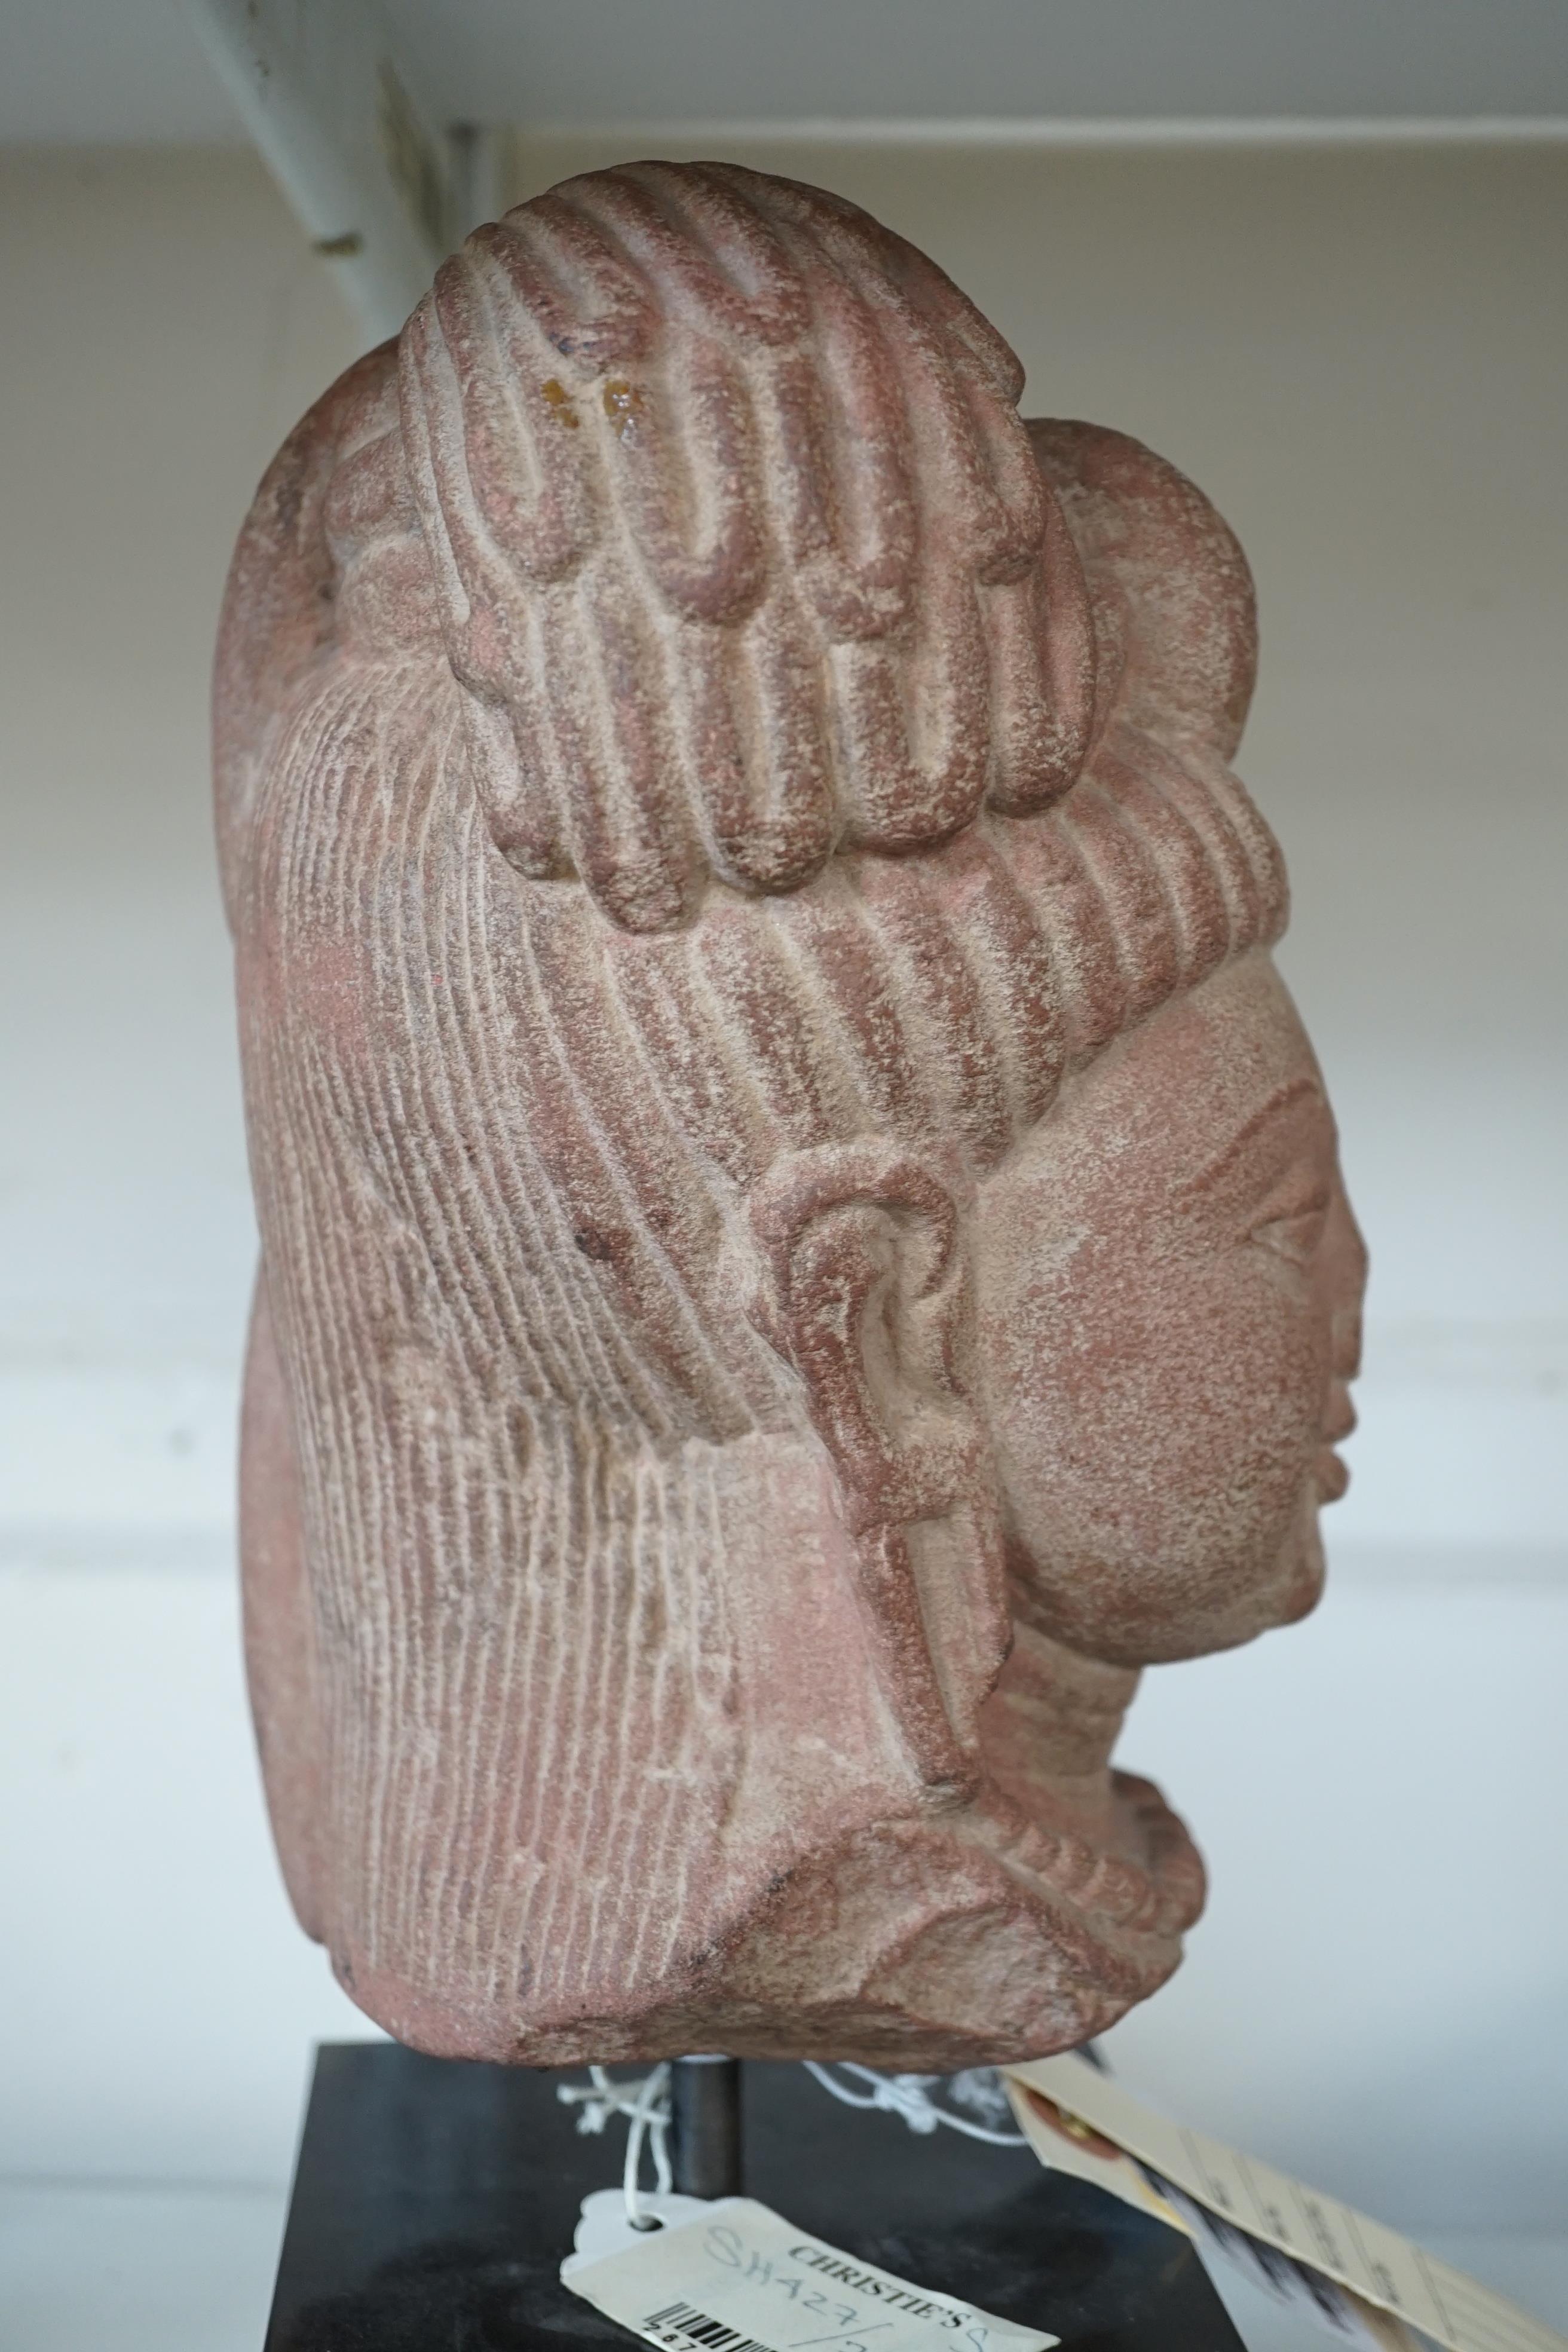 A red stone head of Ardhanarishvara, Muthura region, India, Gupta period, c.5th century A.D.